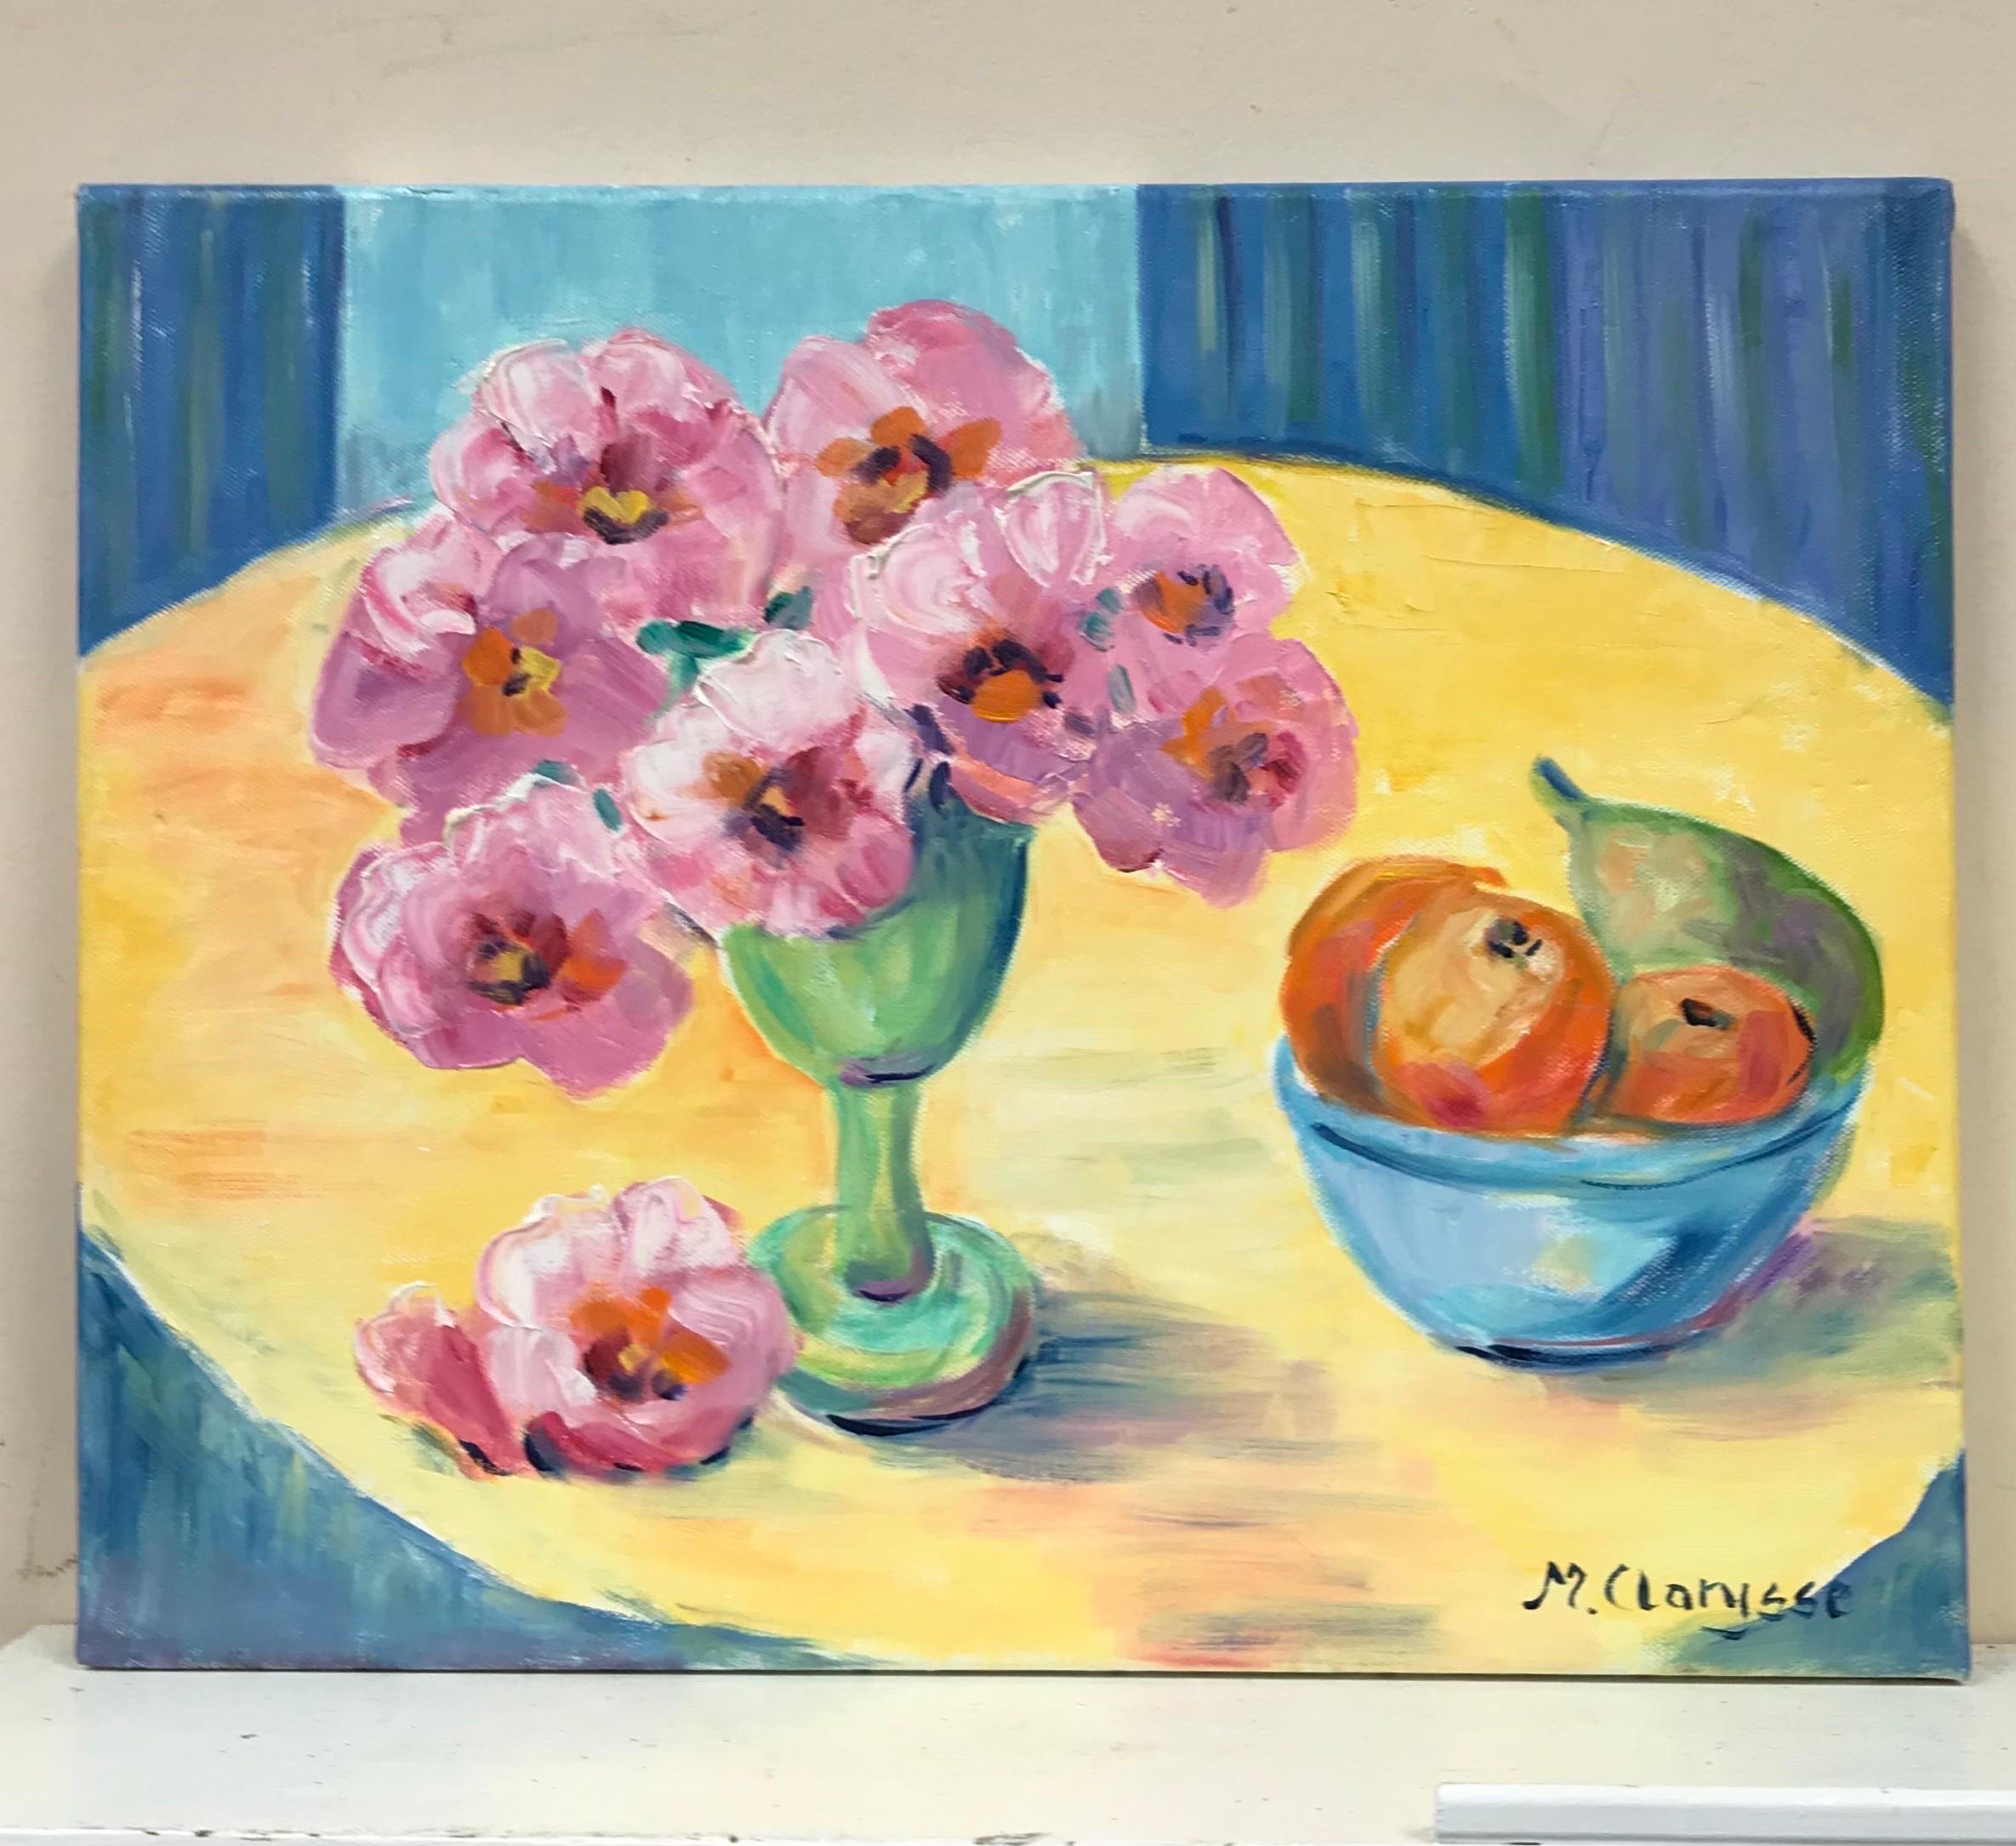 Peinture à l'huile impressionniste française aux couleurs vives et colorées - Fleurs et fruits - Painting de Maggy Clarysse